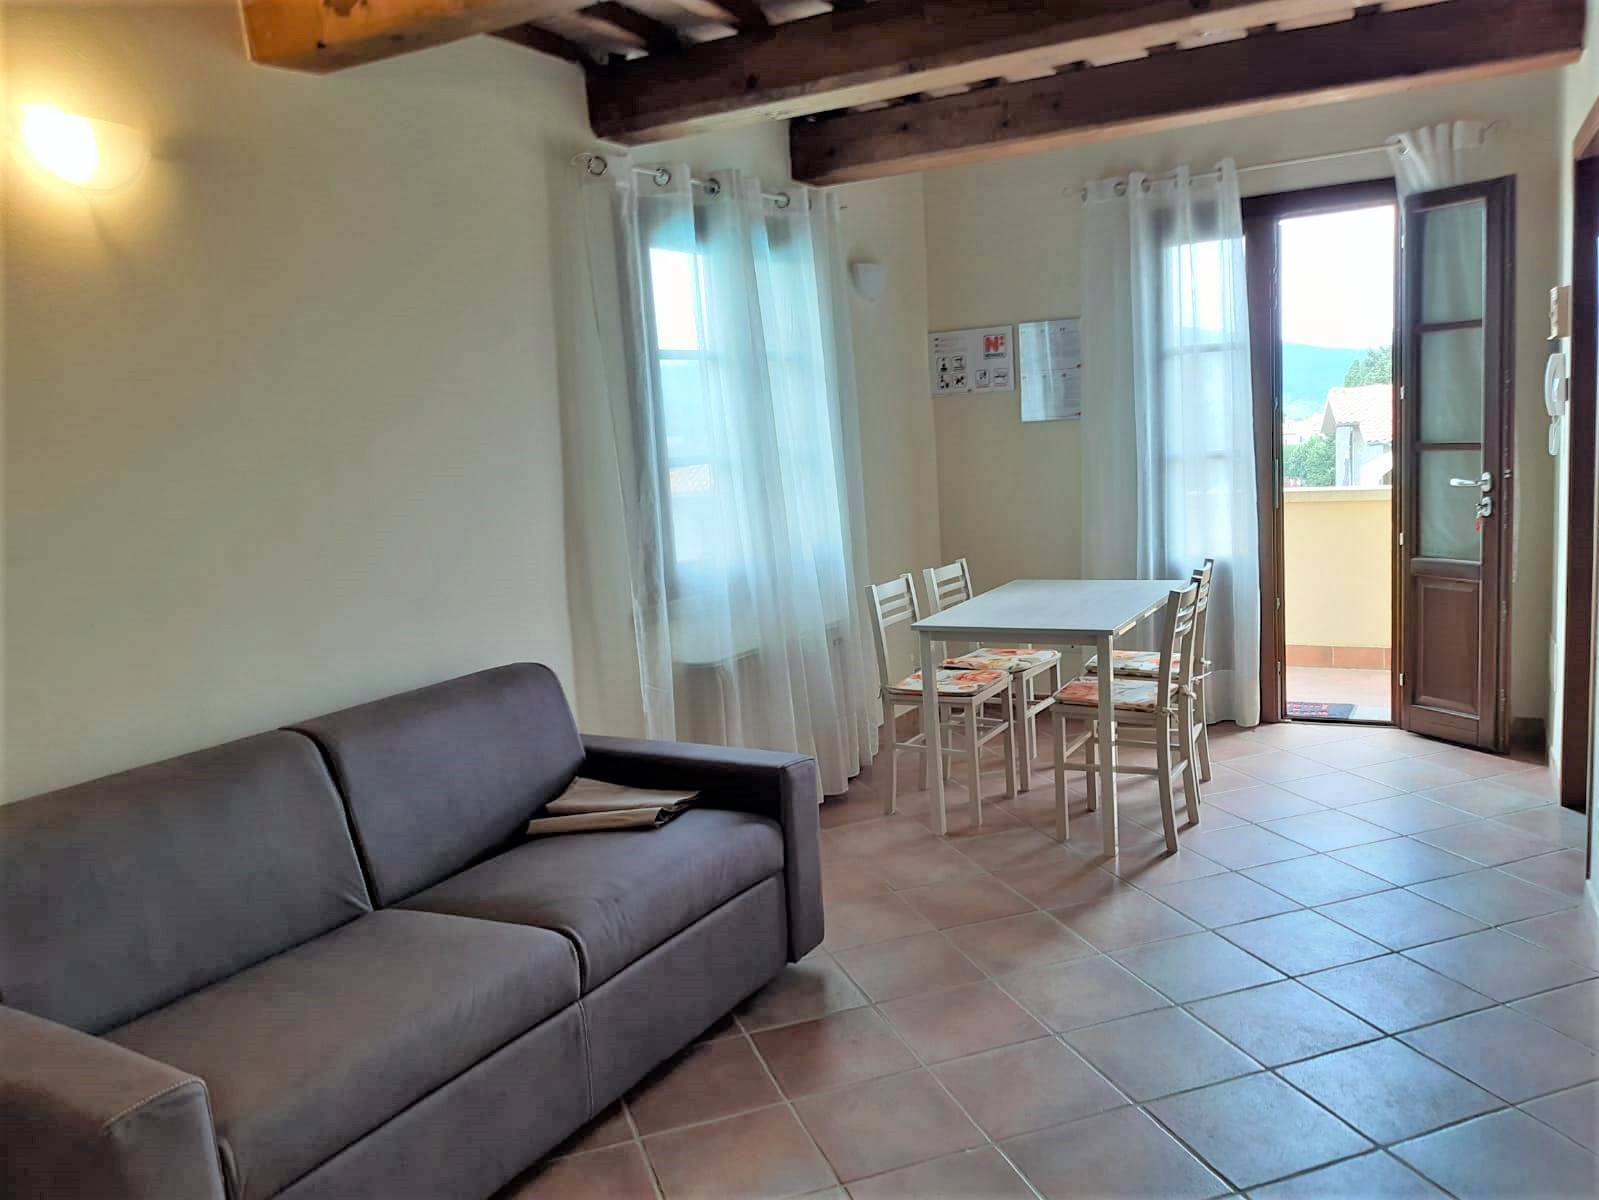 Appartamento in vendita a Monteverdi Marittimo, 2 locali, zona eto, prezzo € 85.000 | PortaleAgenzieImmobiliari.it